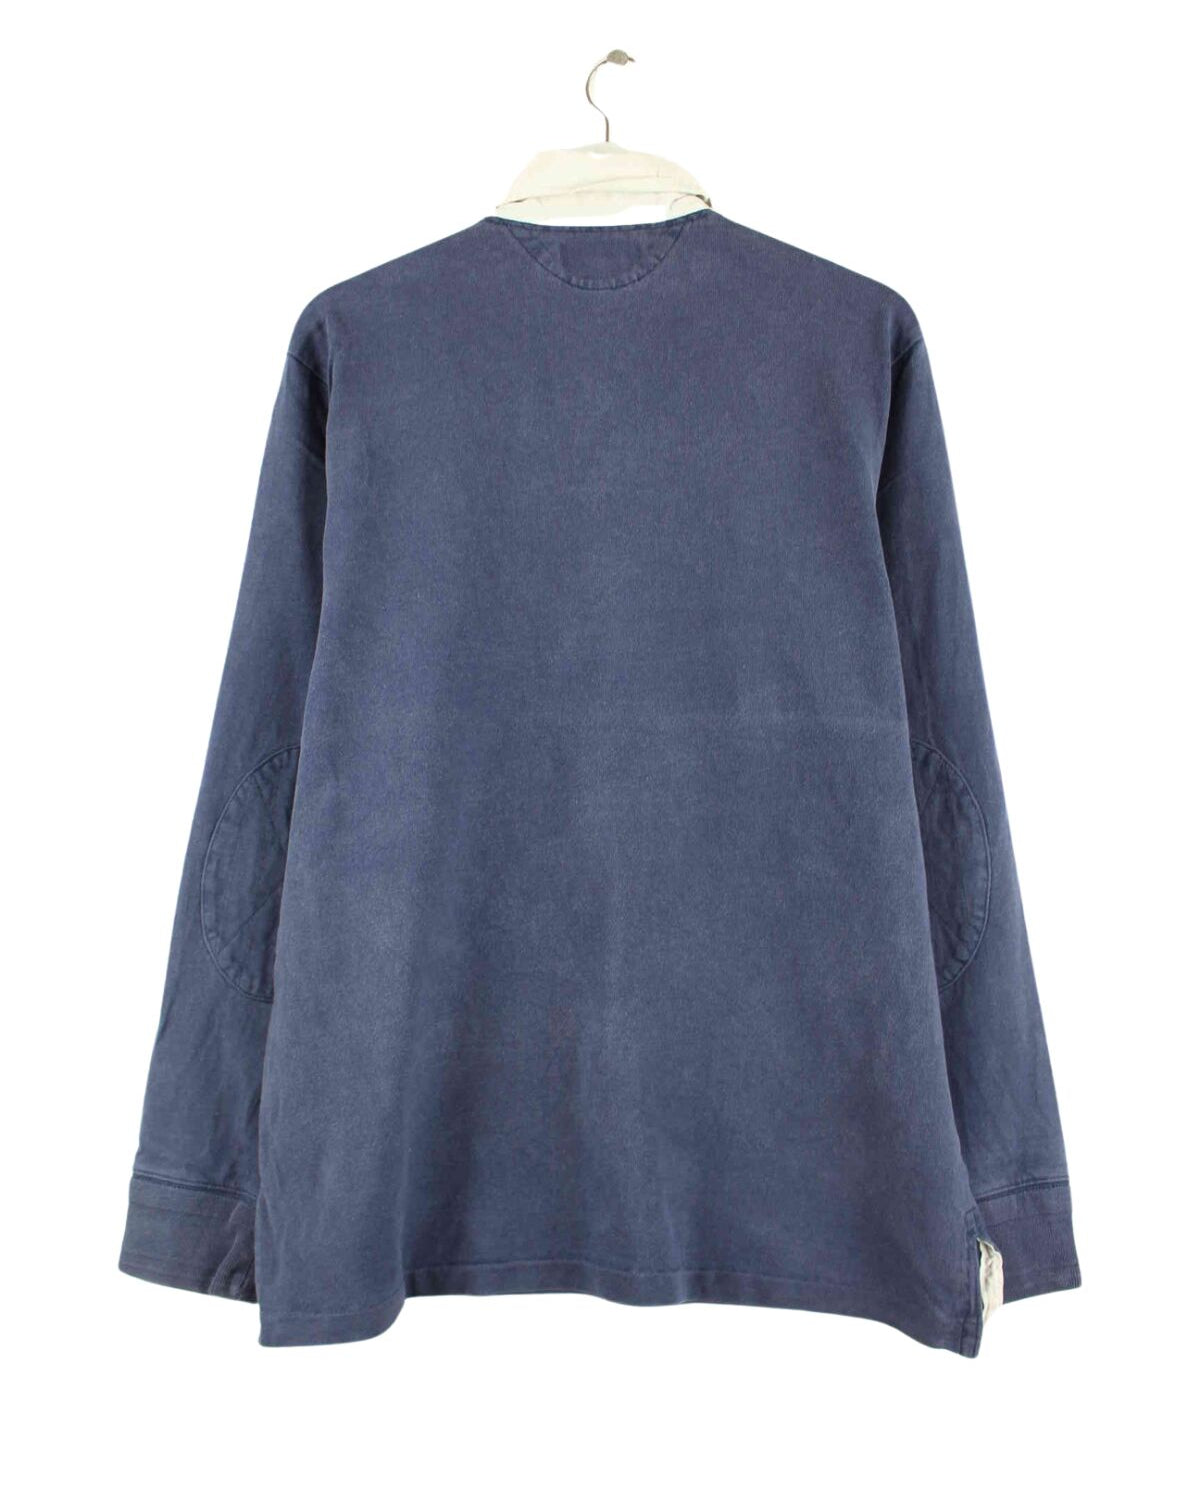 Ralph Lauren 90s Vintage Polo Sweater Blau L (back image)